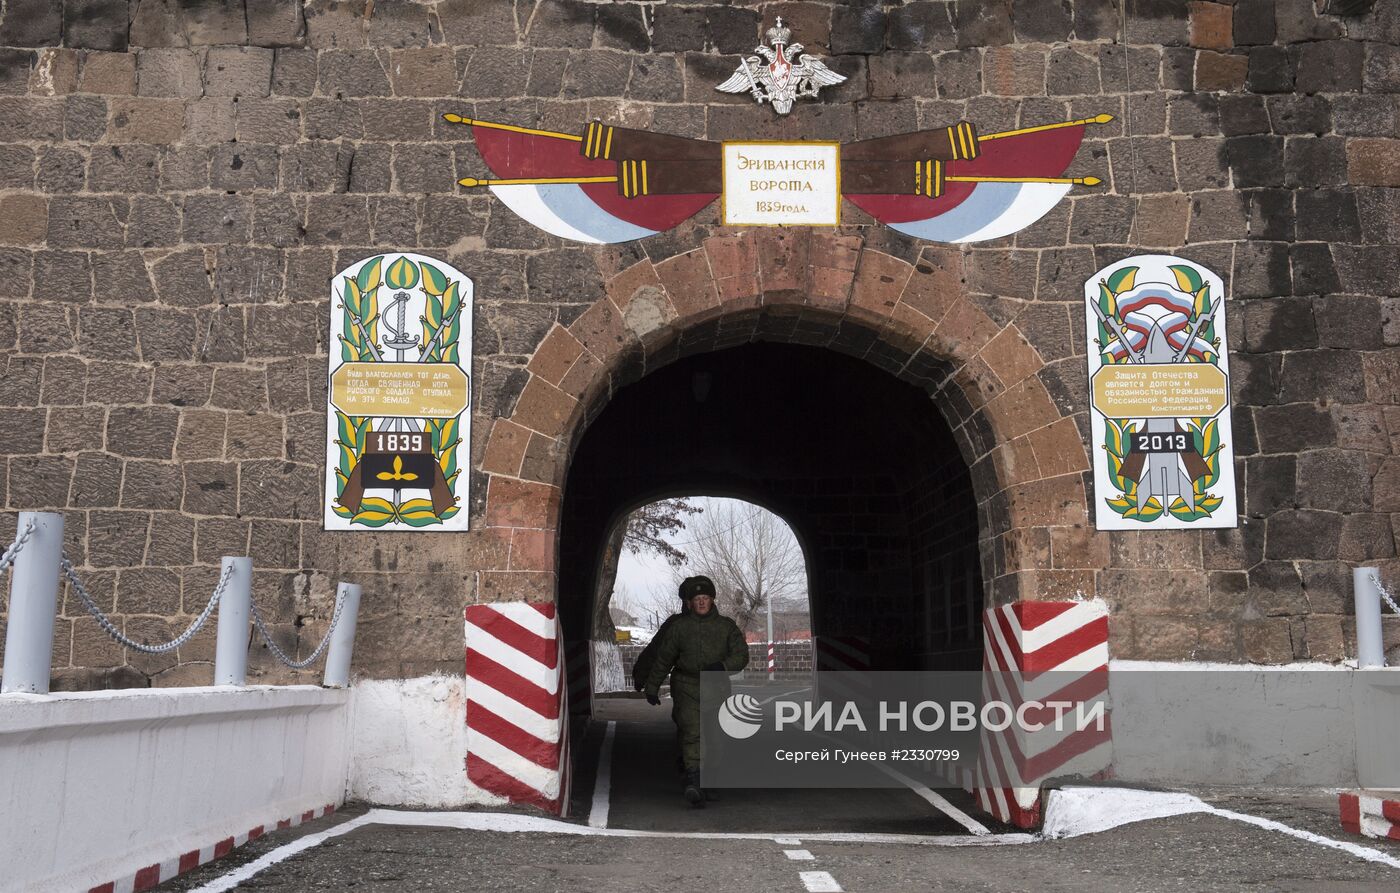 102-я российская военная база в Армении